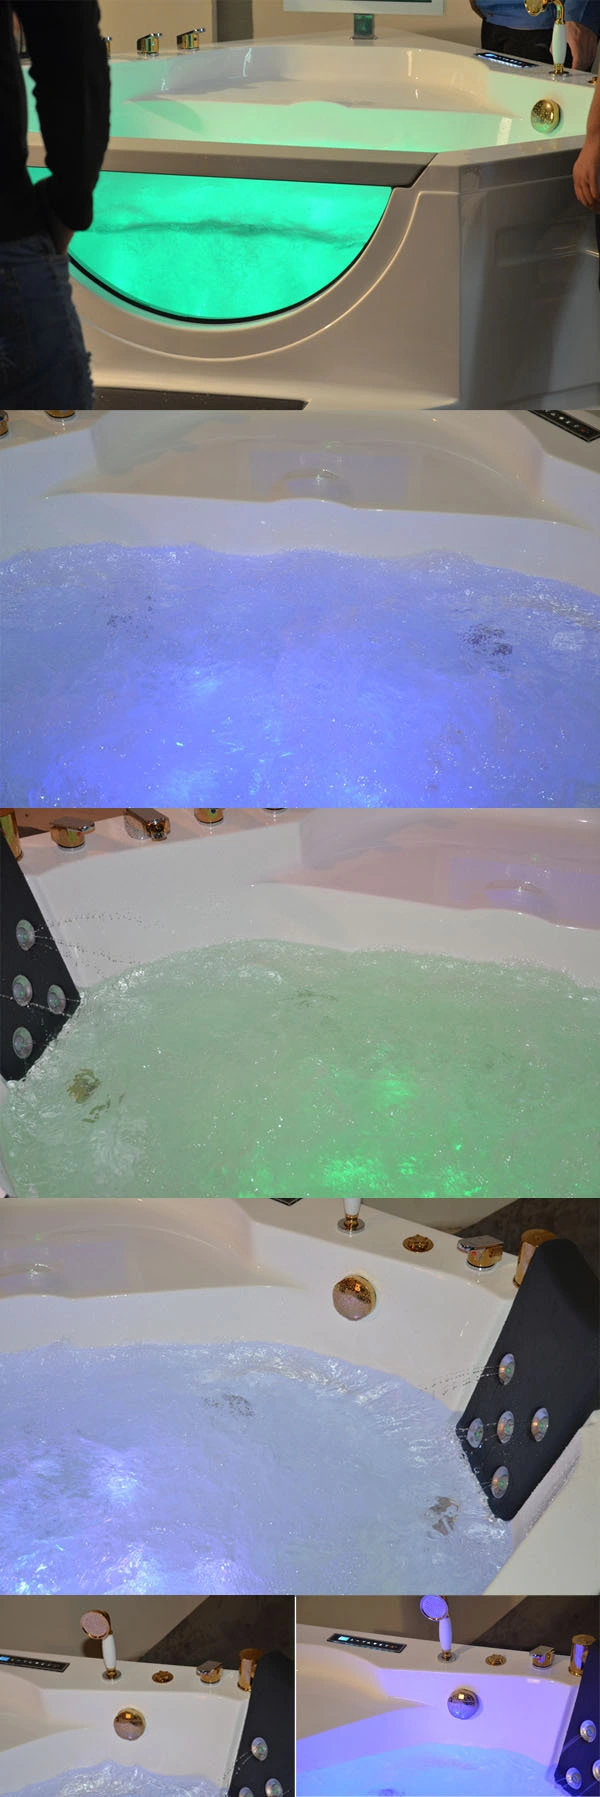 Lucite Whirlpool Bathtub, Bath Tubs Cheap, Indoor Hot Bathtub